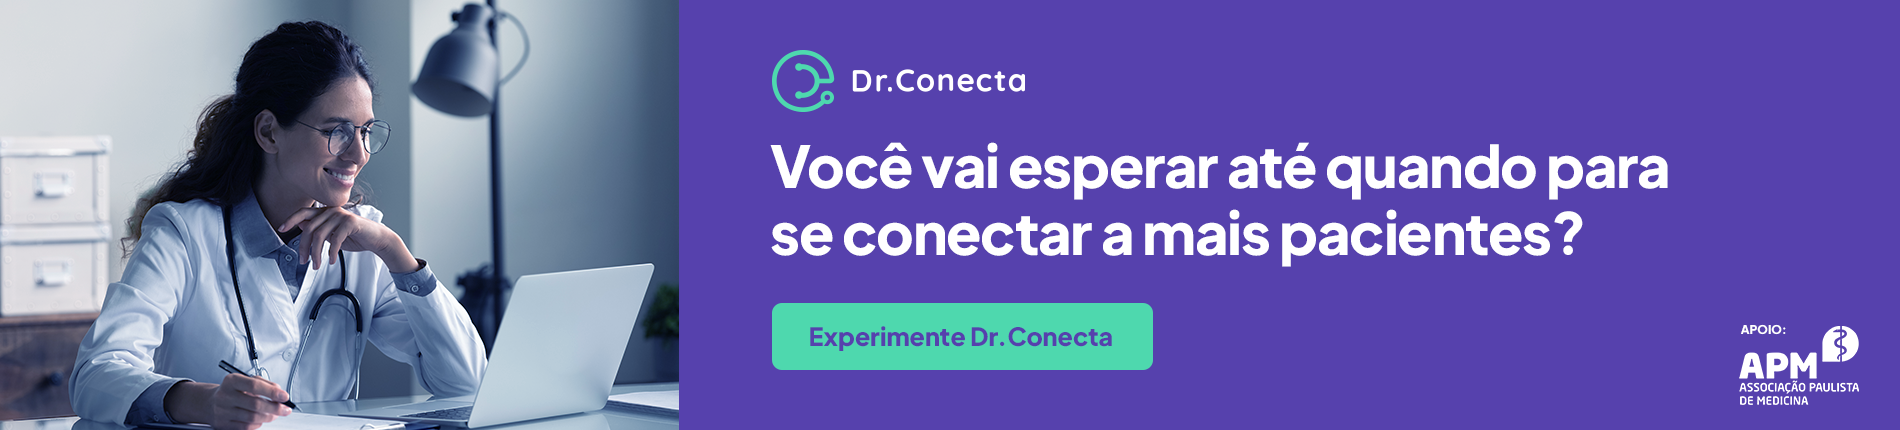 Dr. Conecta